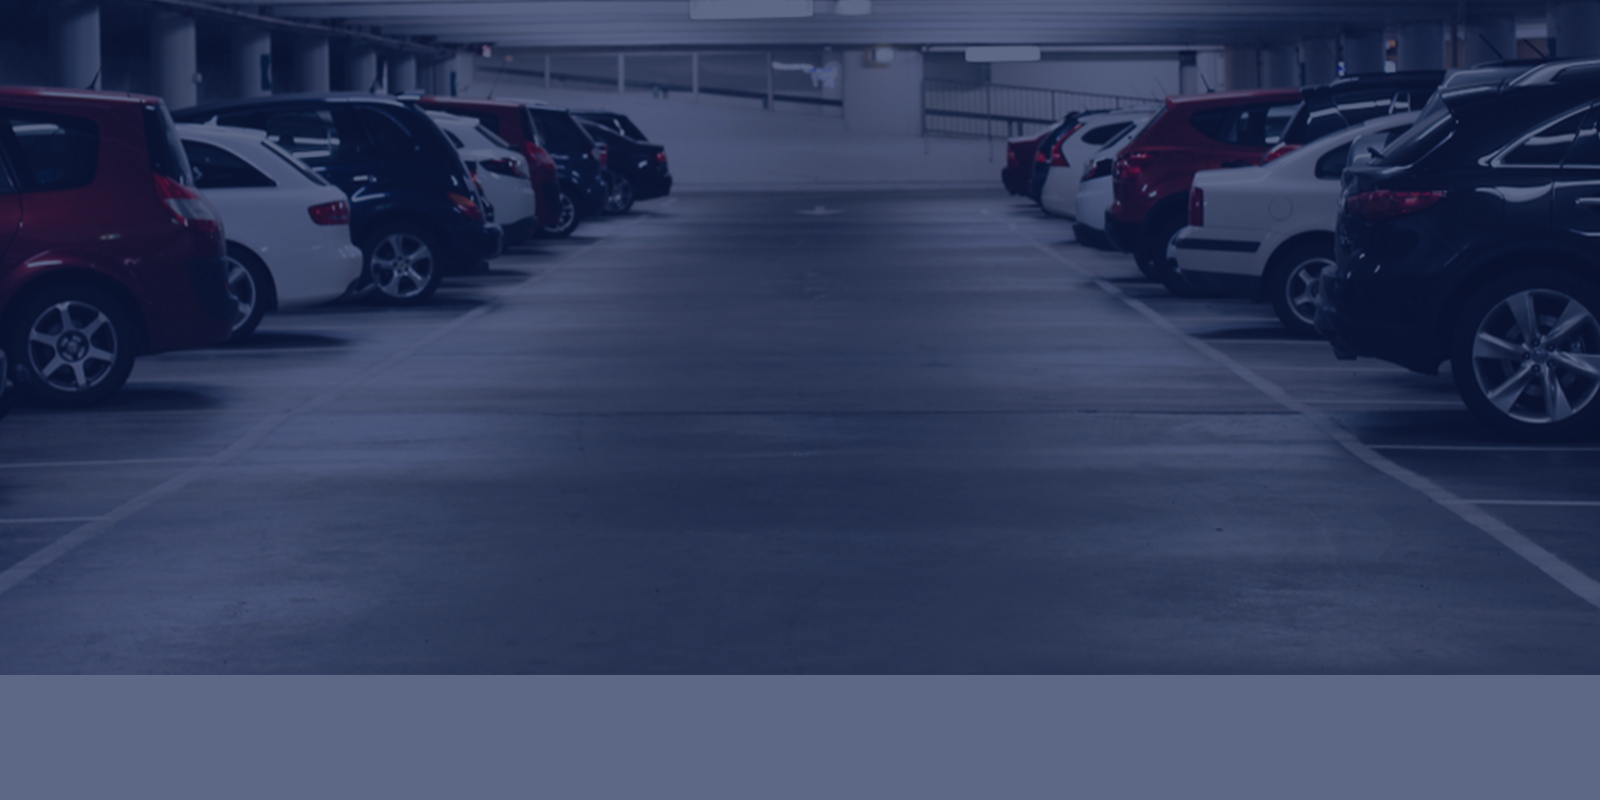 Parking Garage Durability